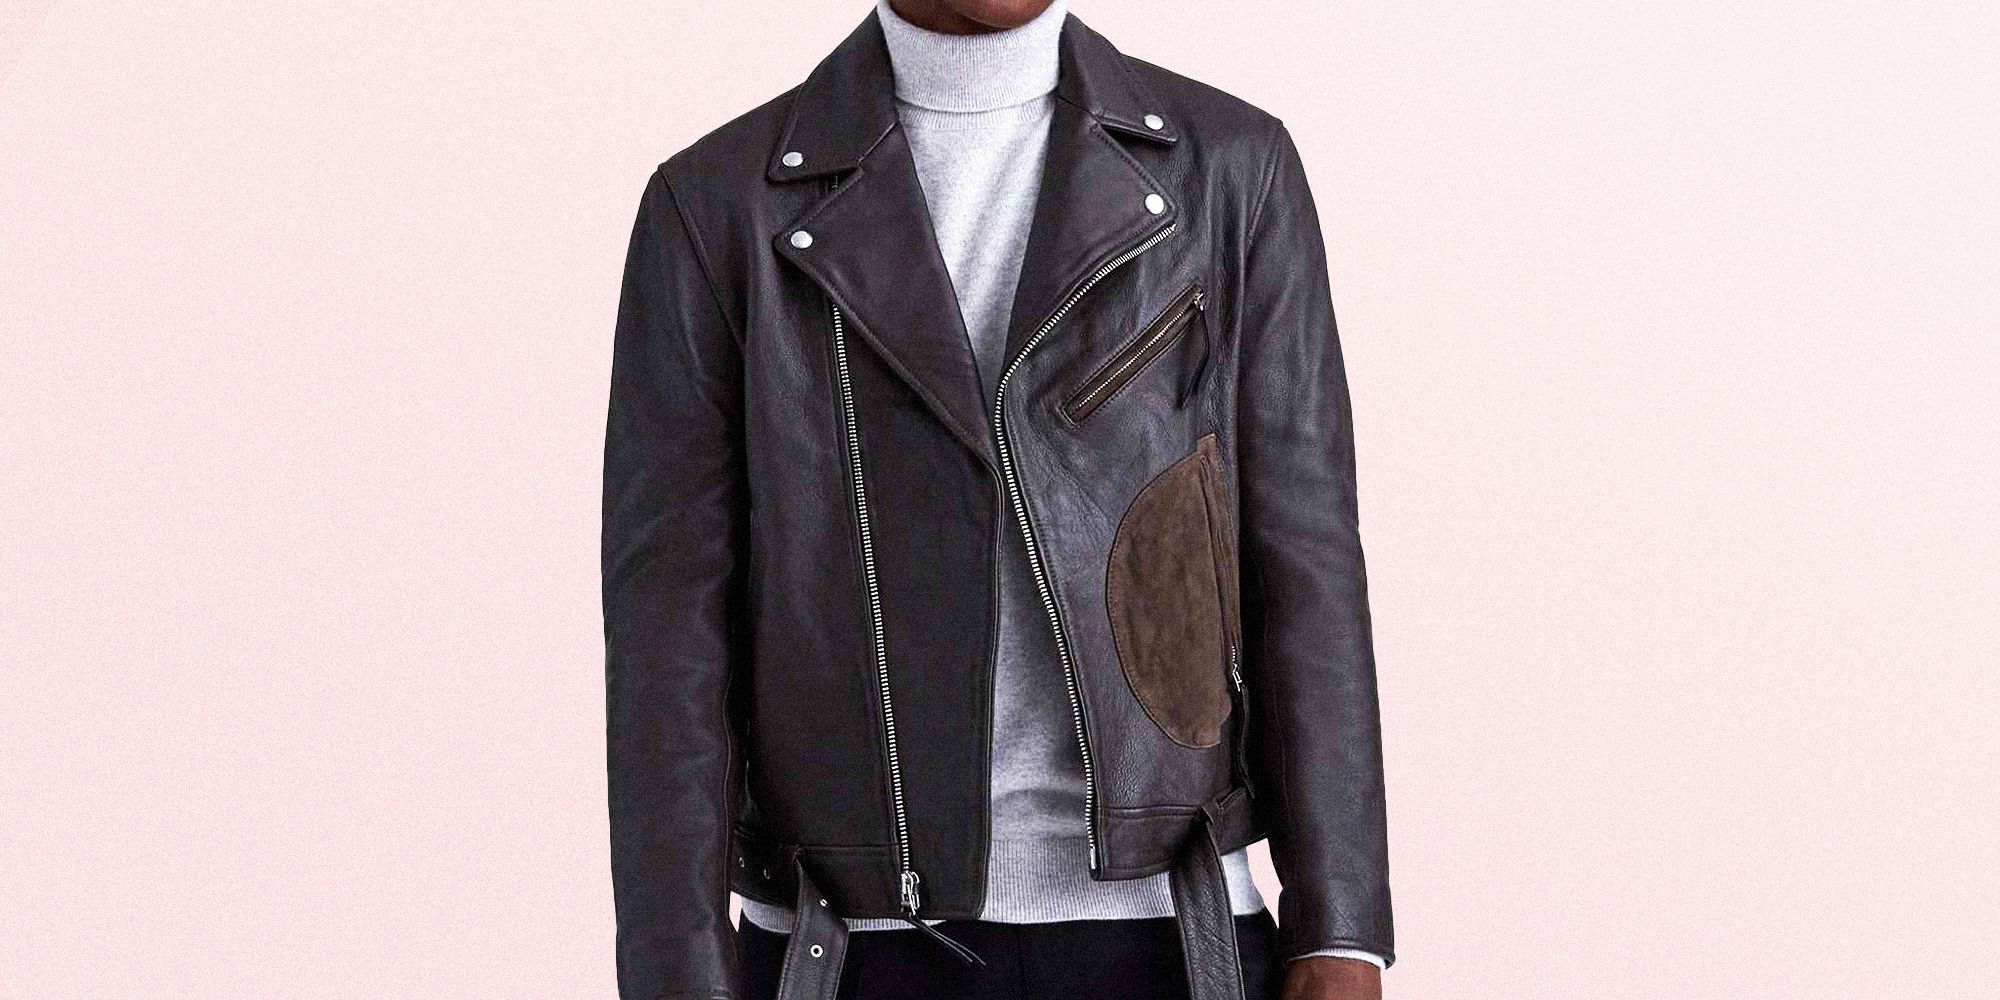 MRULIC Jackets for men Men Winter Leather Jacket Biker Motorcycle Zipper  Long Sleeve Coat Top BlousesMen's Casual Jackets Black + L - Walmart.com